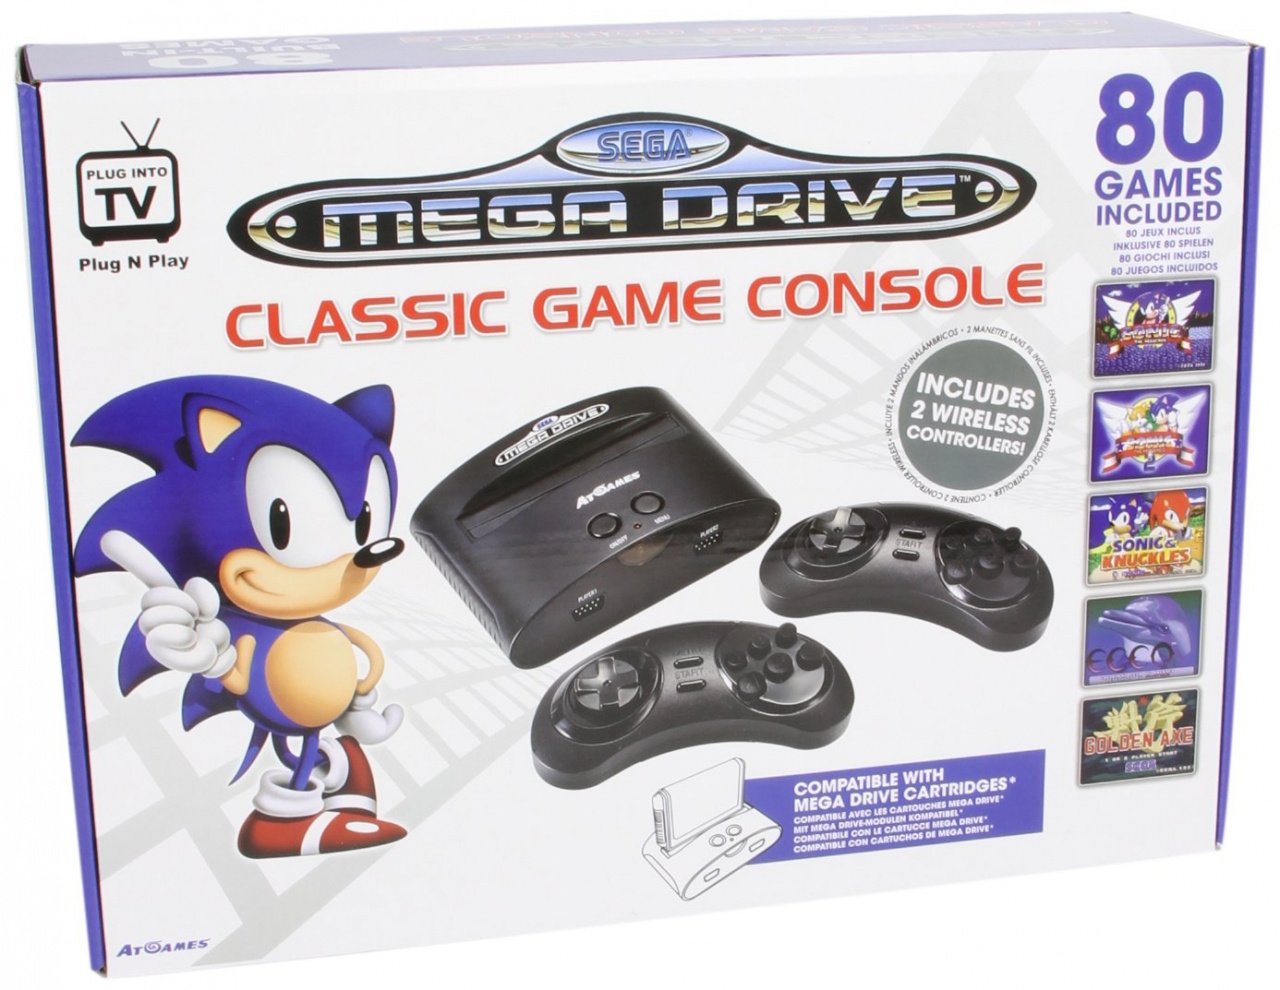 Sega Genesis Nostalgia: we all win the console wars - The Chozo